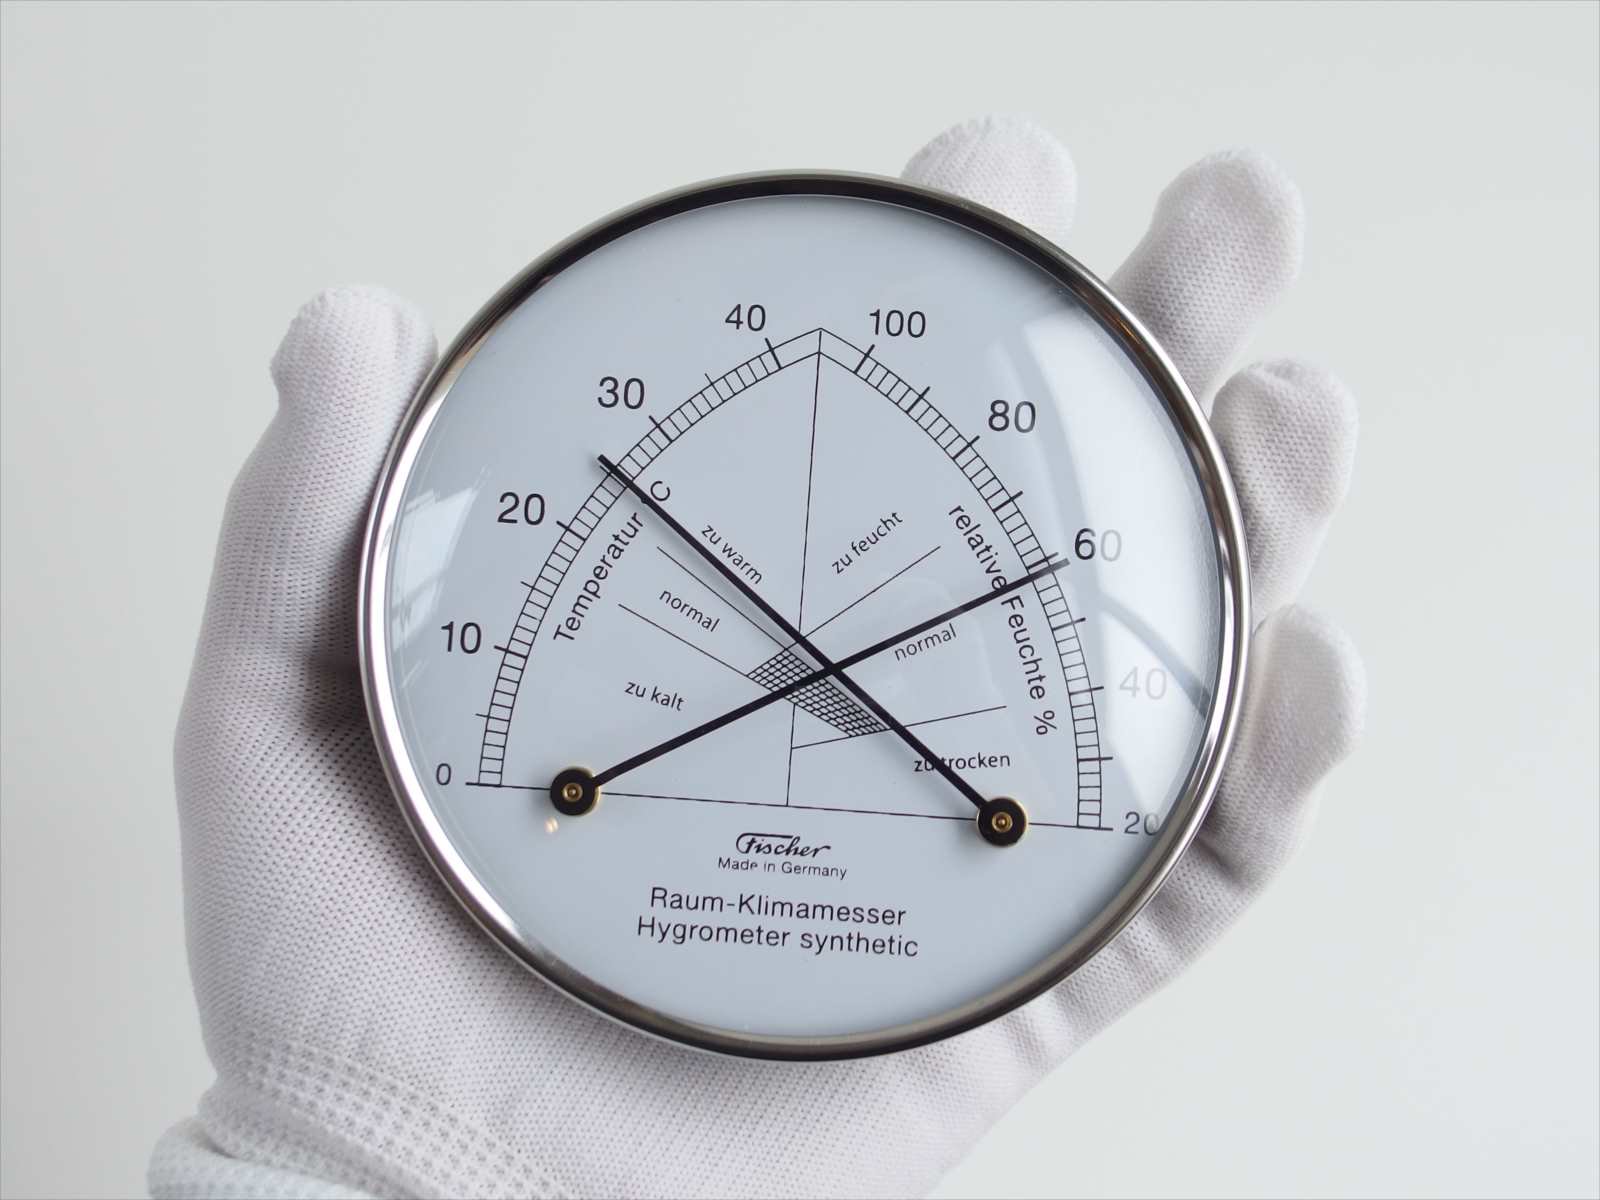 人気ショップ 142.01 コンフォートメーター Fischer-barometer Comfortmeter 温度計 湿度計 温湿度計 直径10cm  アナログ シルバー ドイツ製